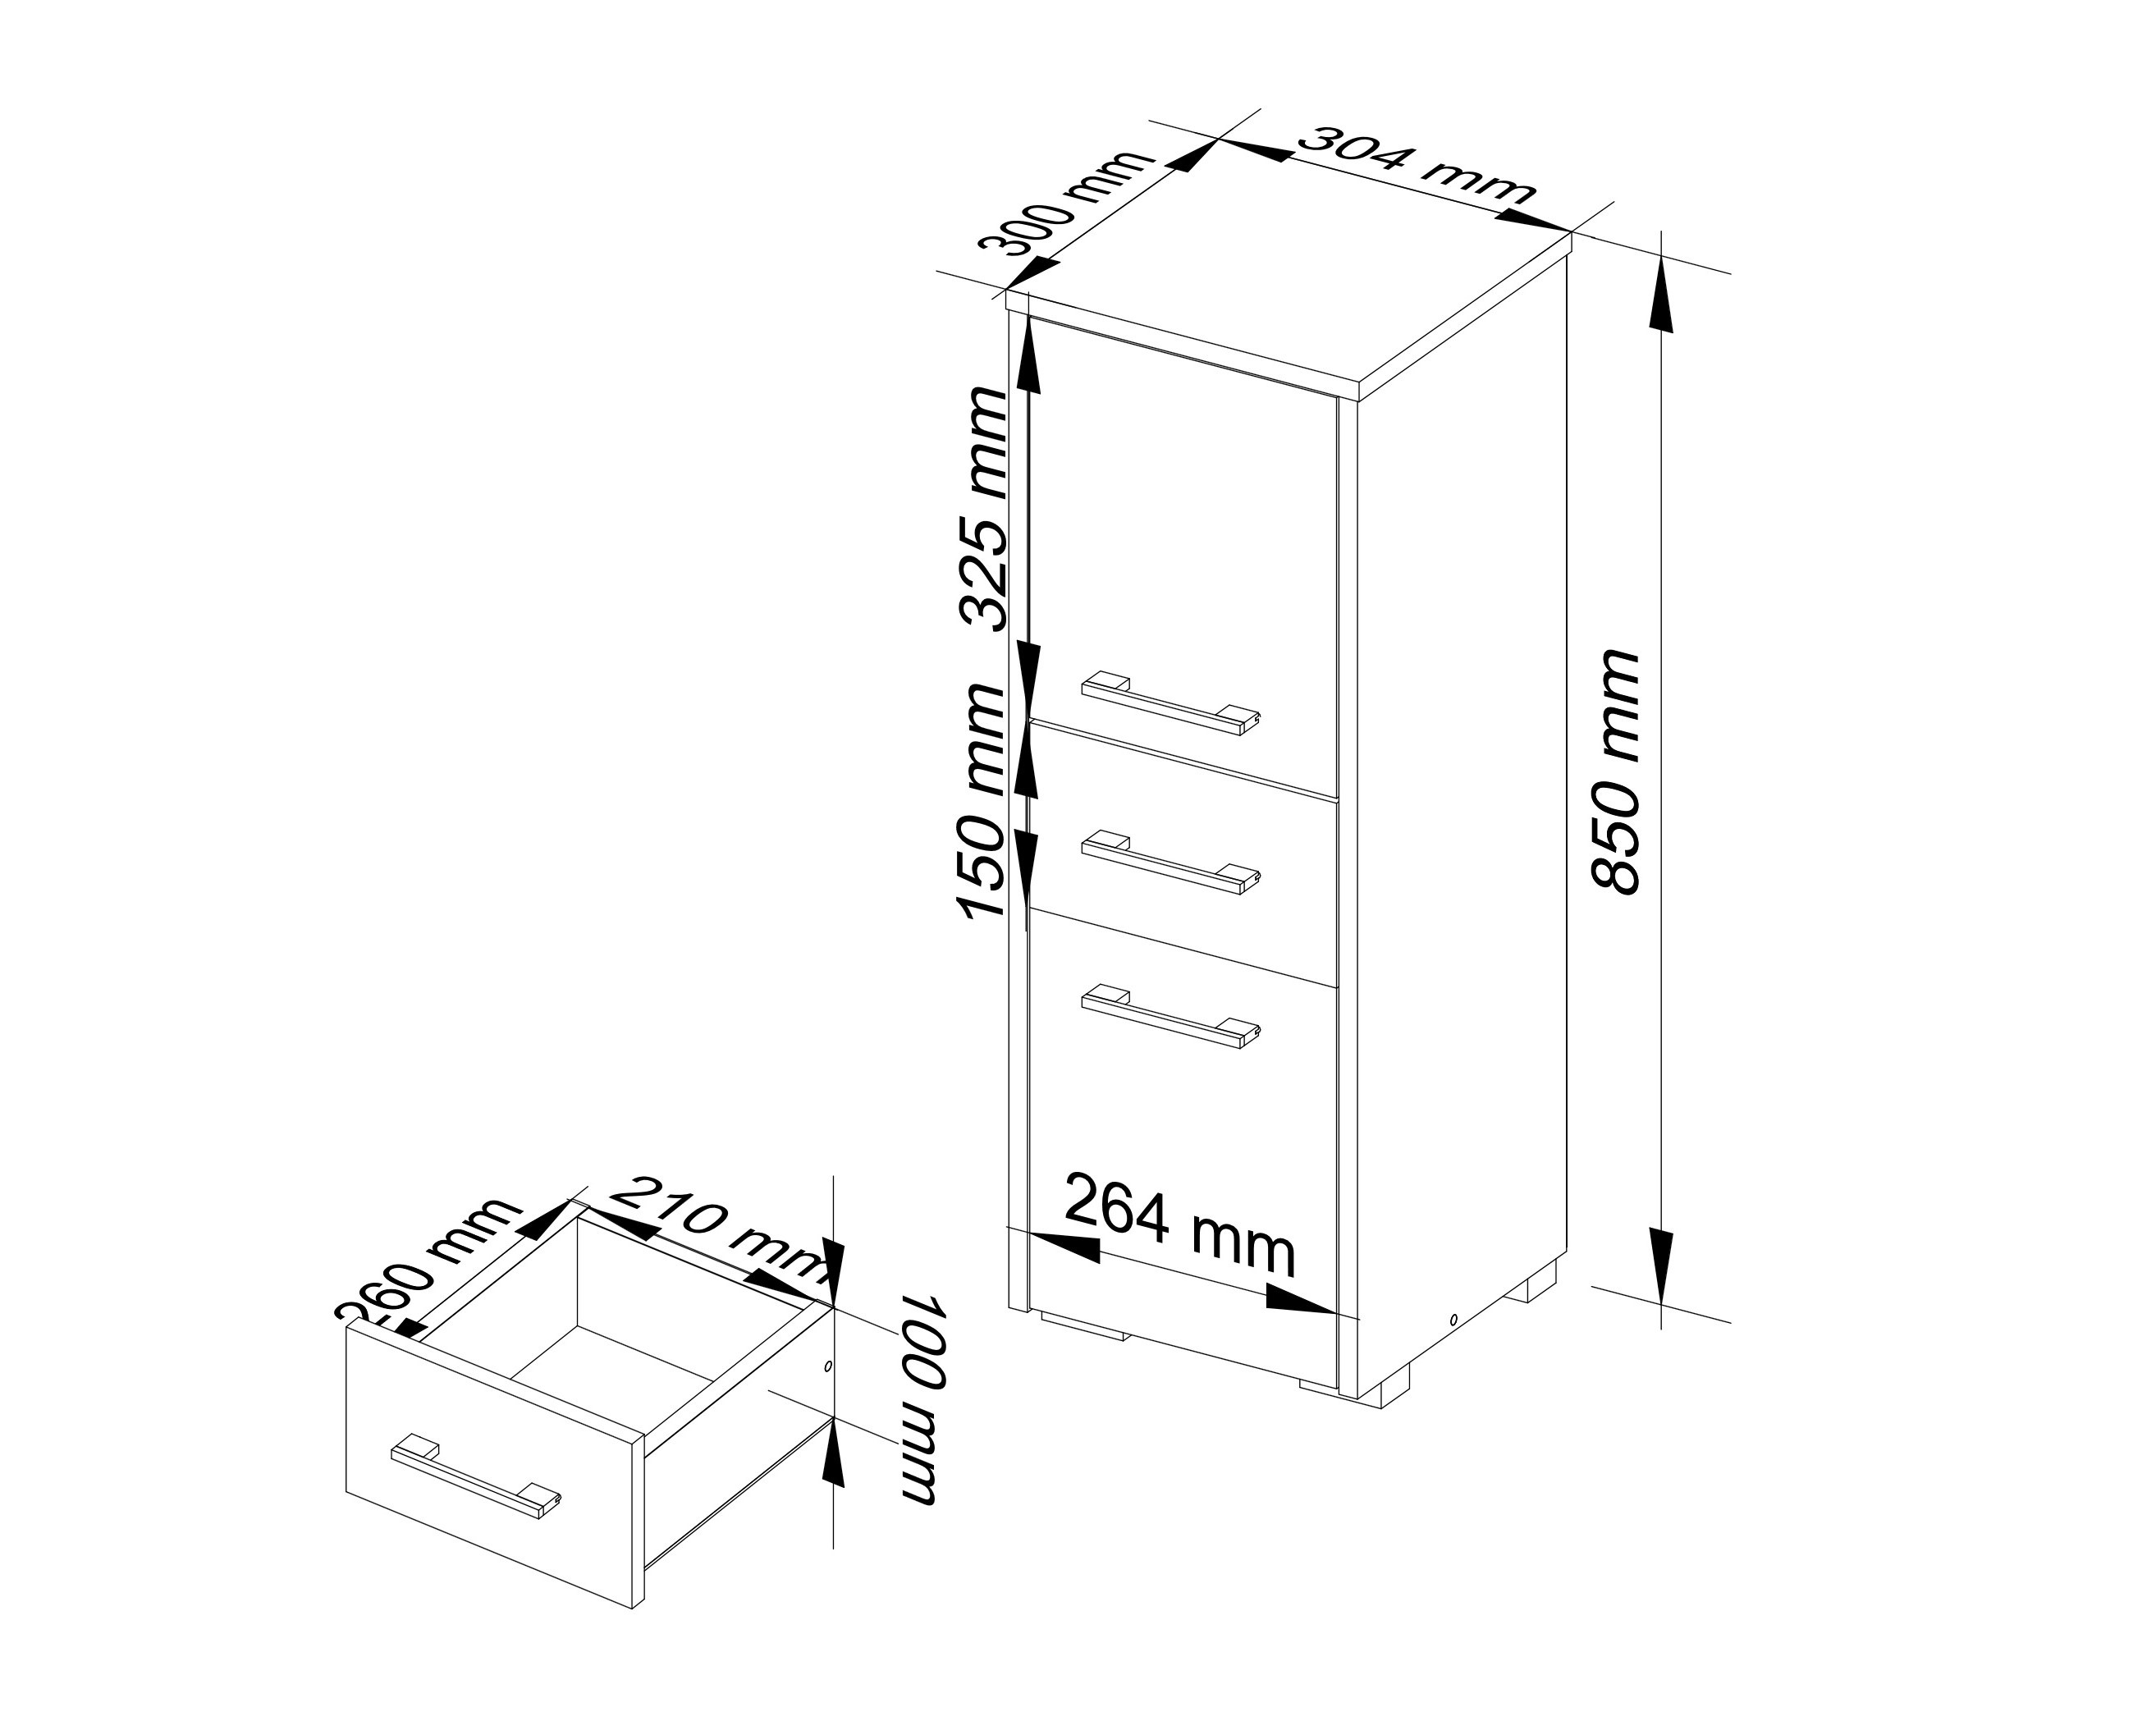 Meble AKORD - Szafka łazienkowa FIN Wenge 30 cm 2 drzwi 1 szuflada kolor Biały mat 3 półki 30x30x85 cm - Wymiary toaletki AKORD - 5907504389066